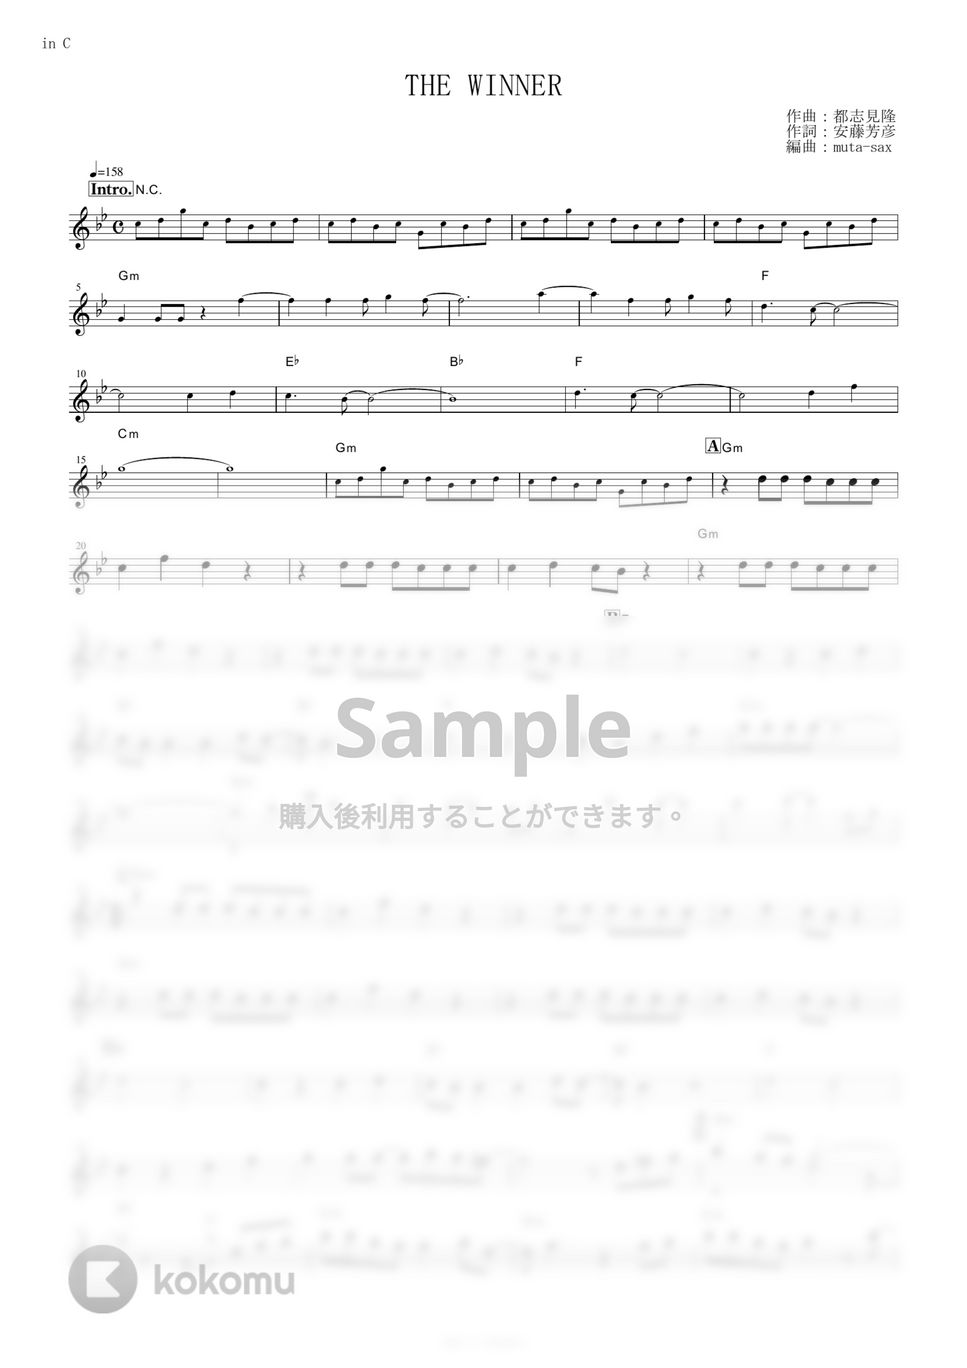 松原みき - THE WINNER (『機動戦士ガンダム0083 STARDUST MEMORY』 / in C) by muta-sax